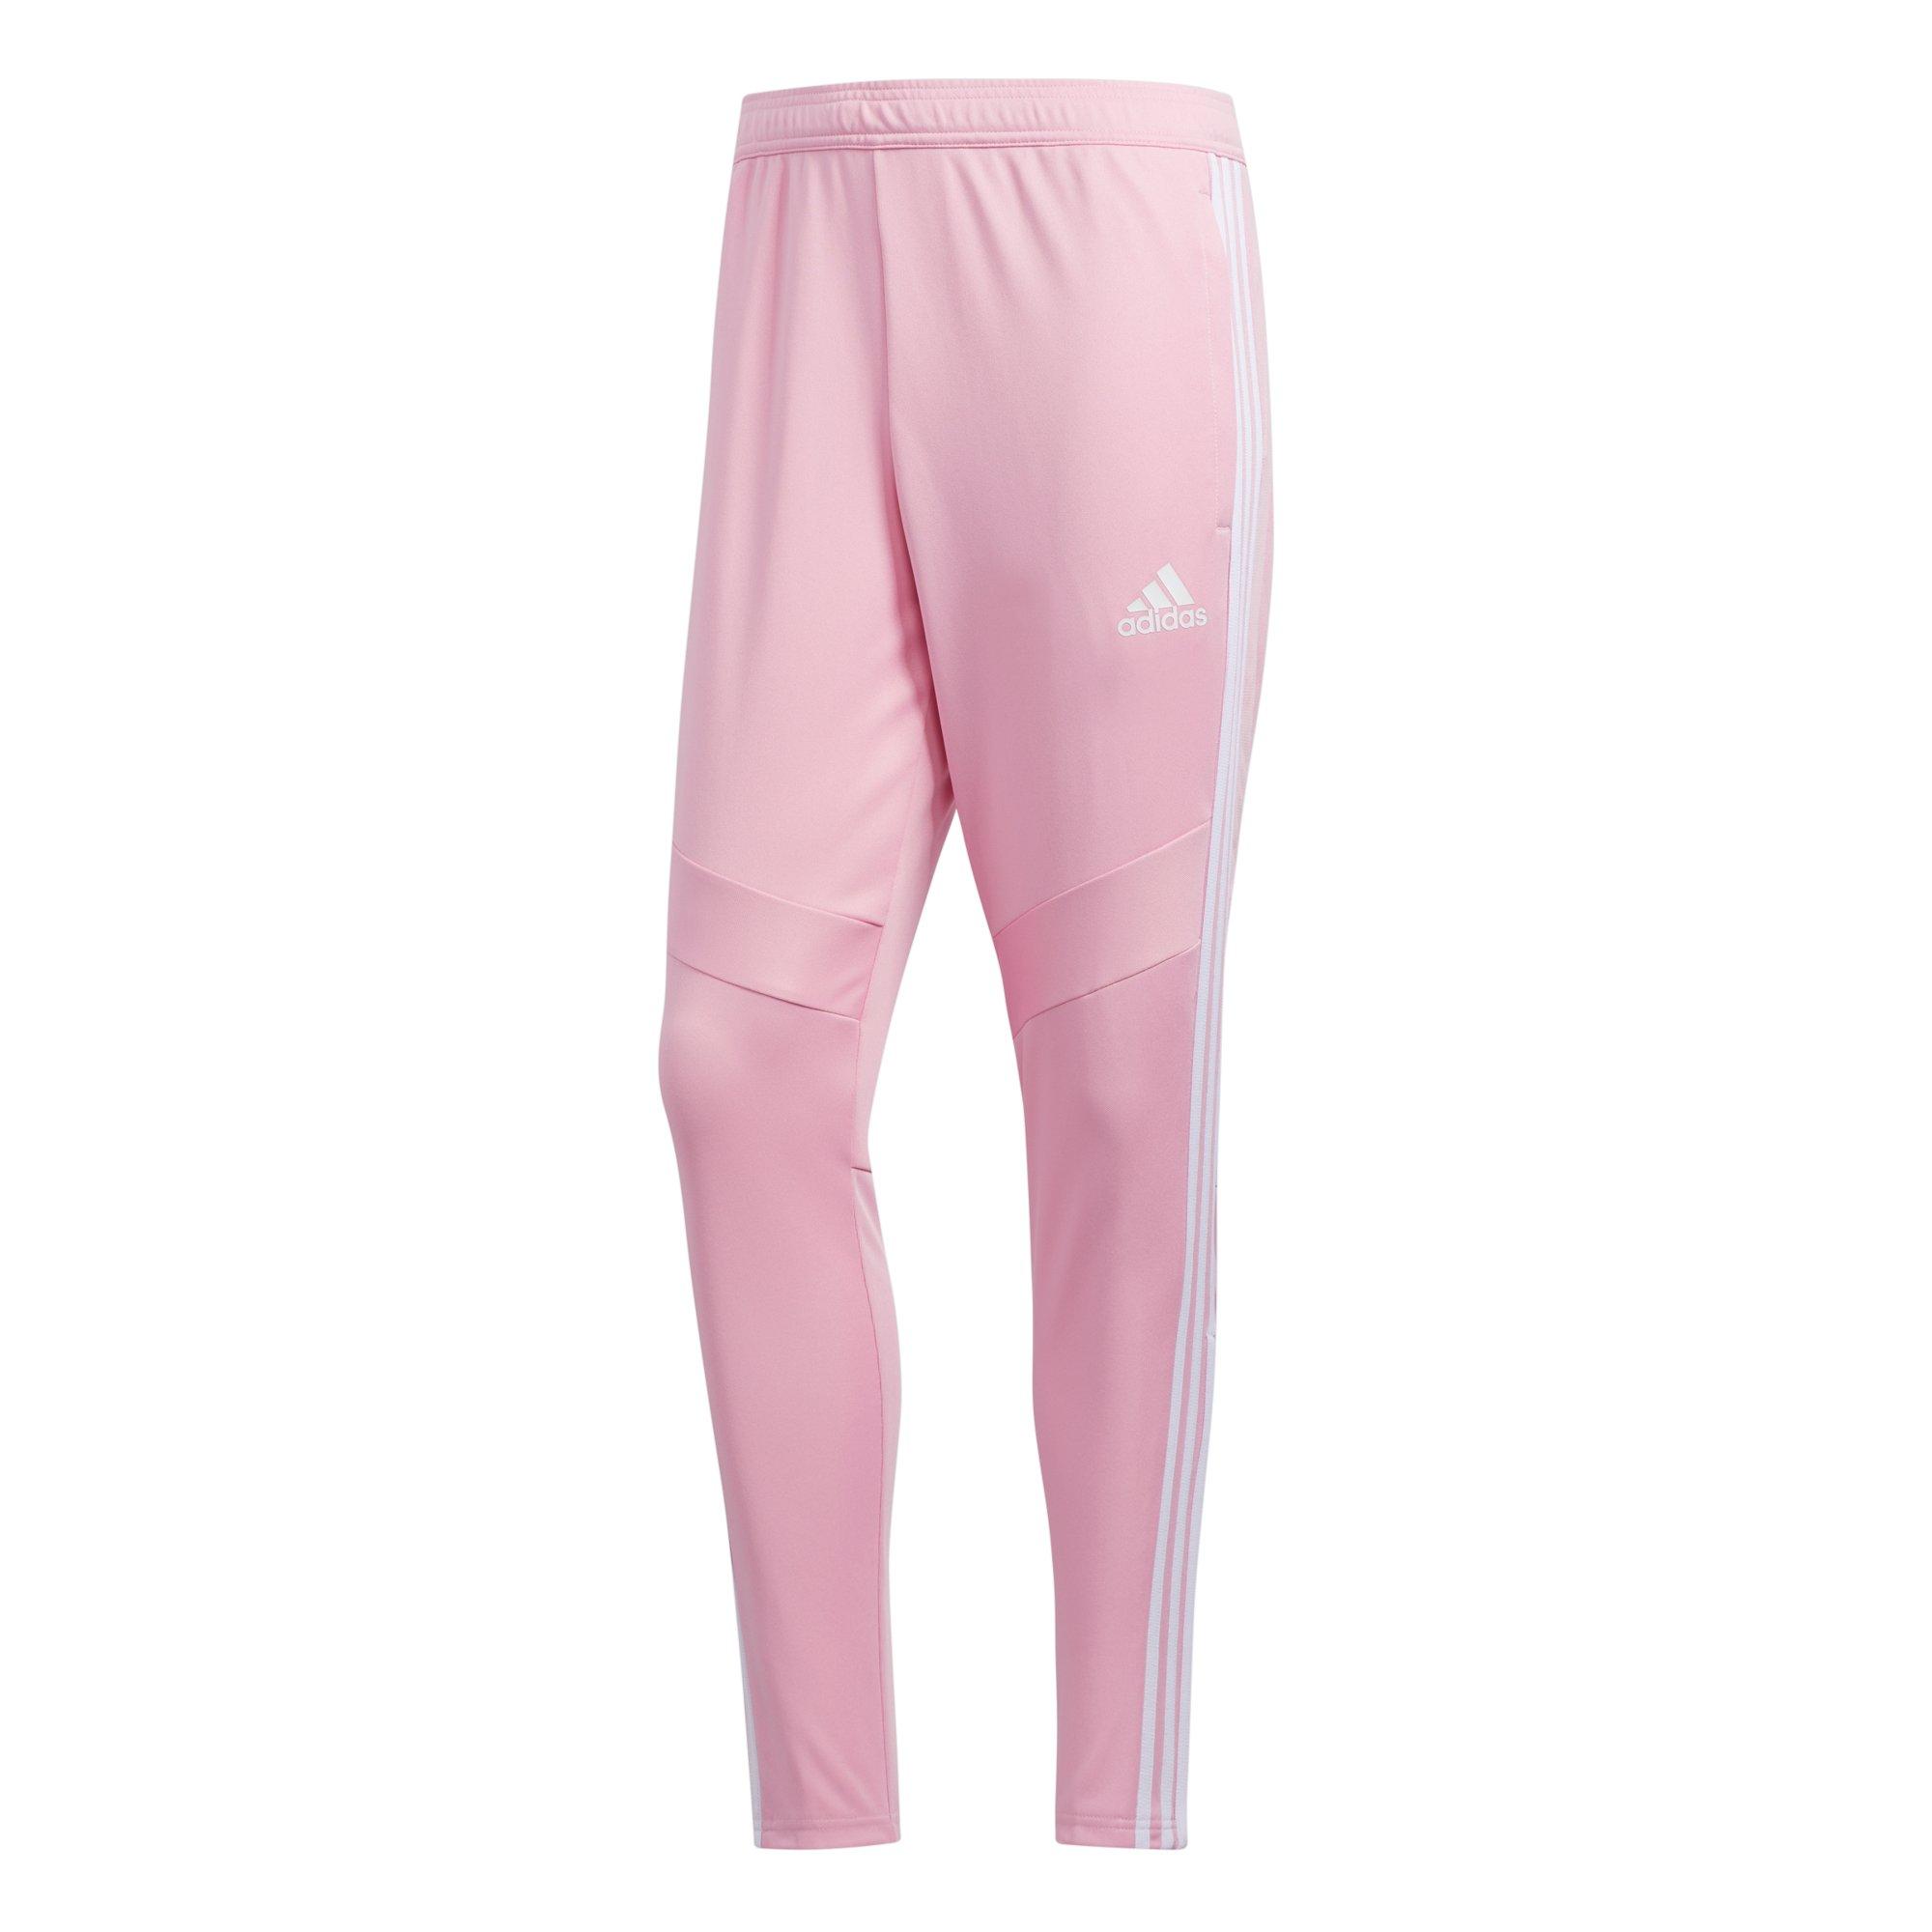 pink adidas soccer pants